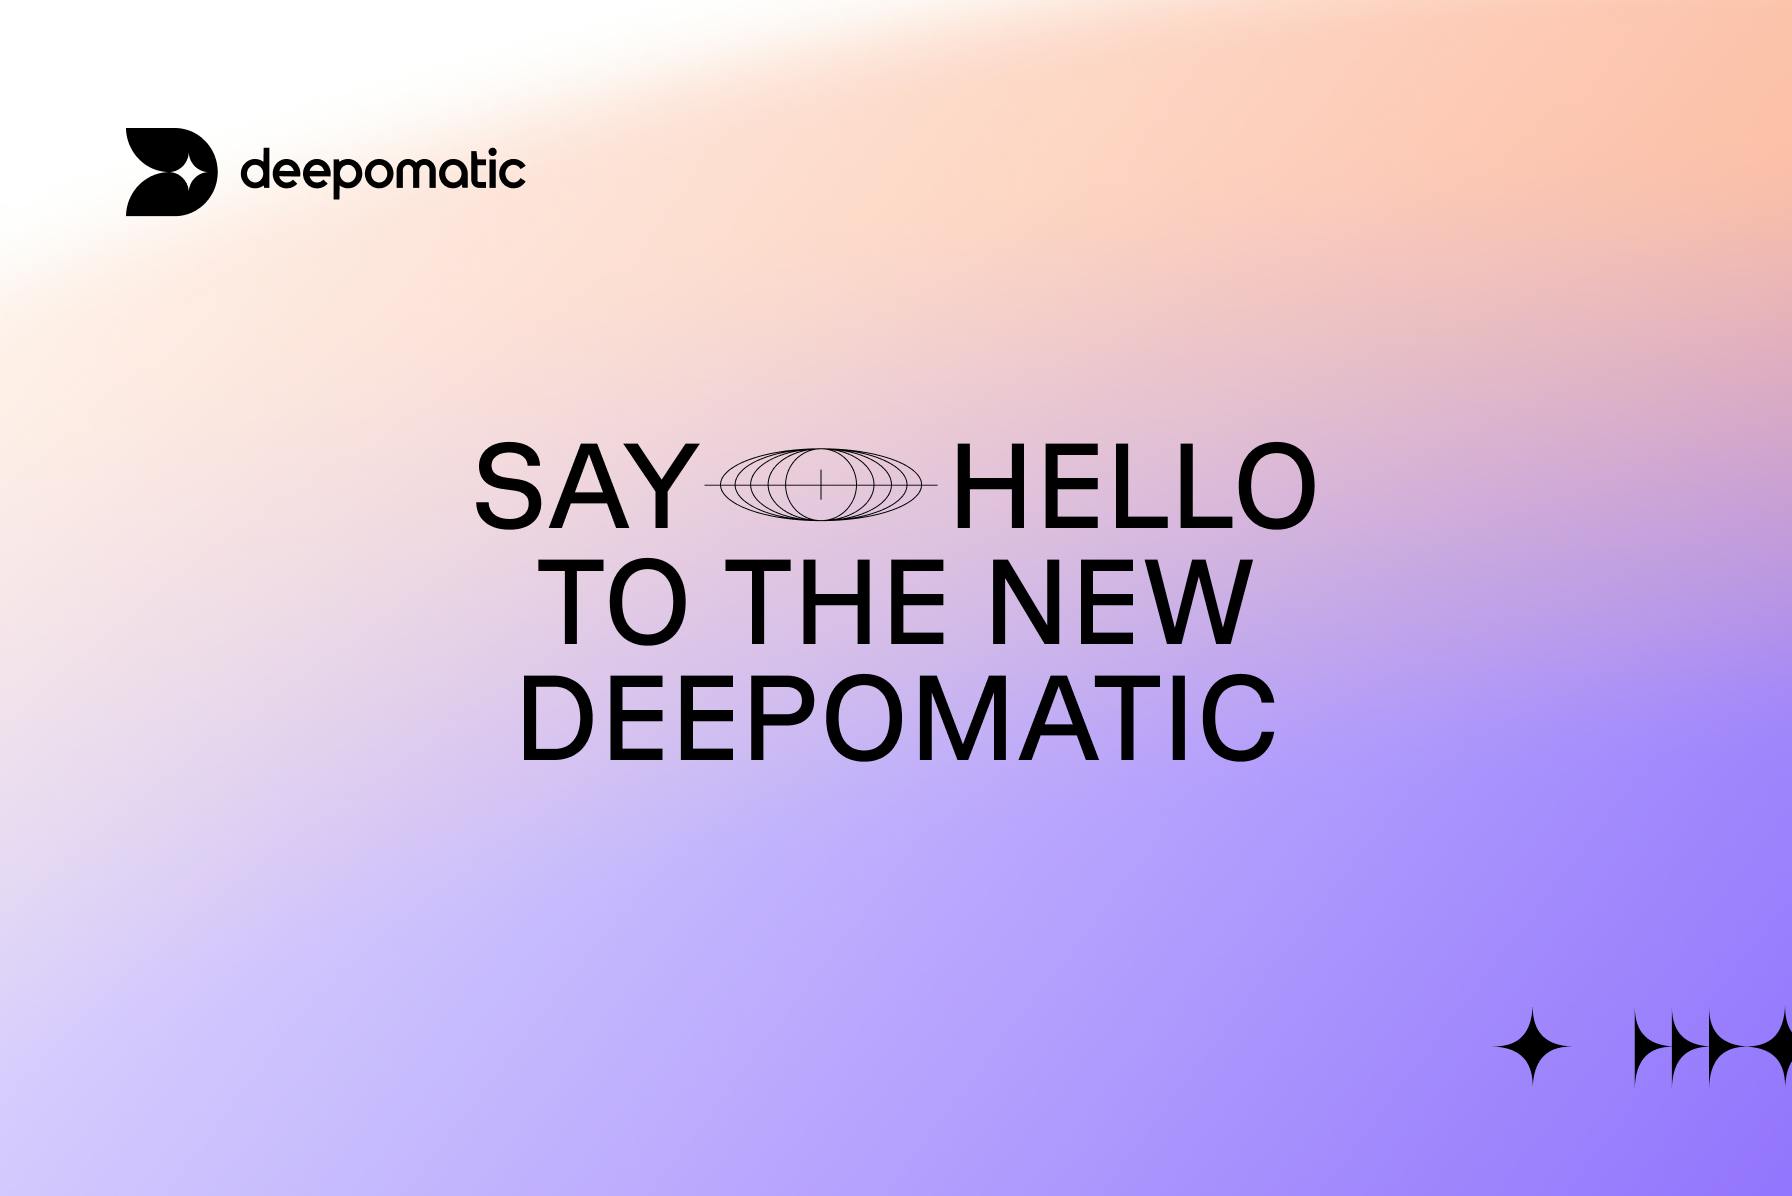 Deepomatic stellt eine neue visuelle Identität und ein neues Logo vor, die Qualität, Geschwindigkeit und Technologie betonen. Weitere Informationen finden Sie auf unserer mehrsprachigen Website.